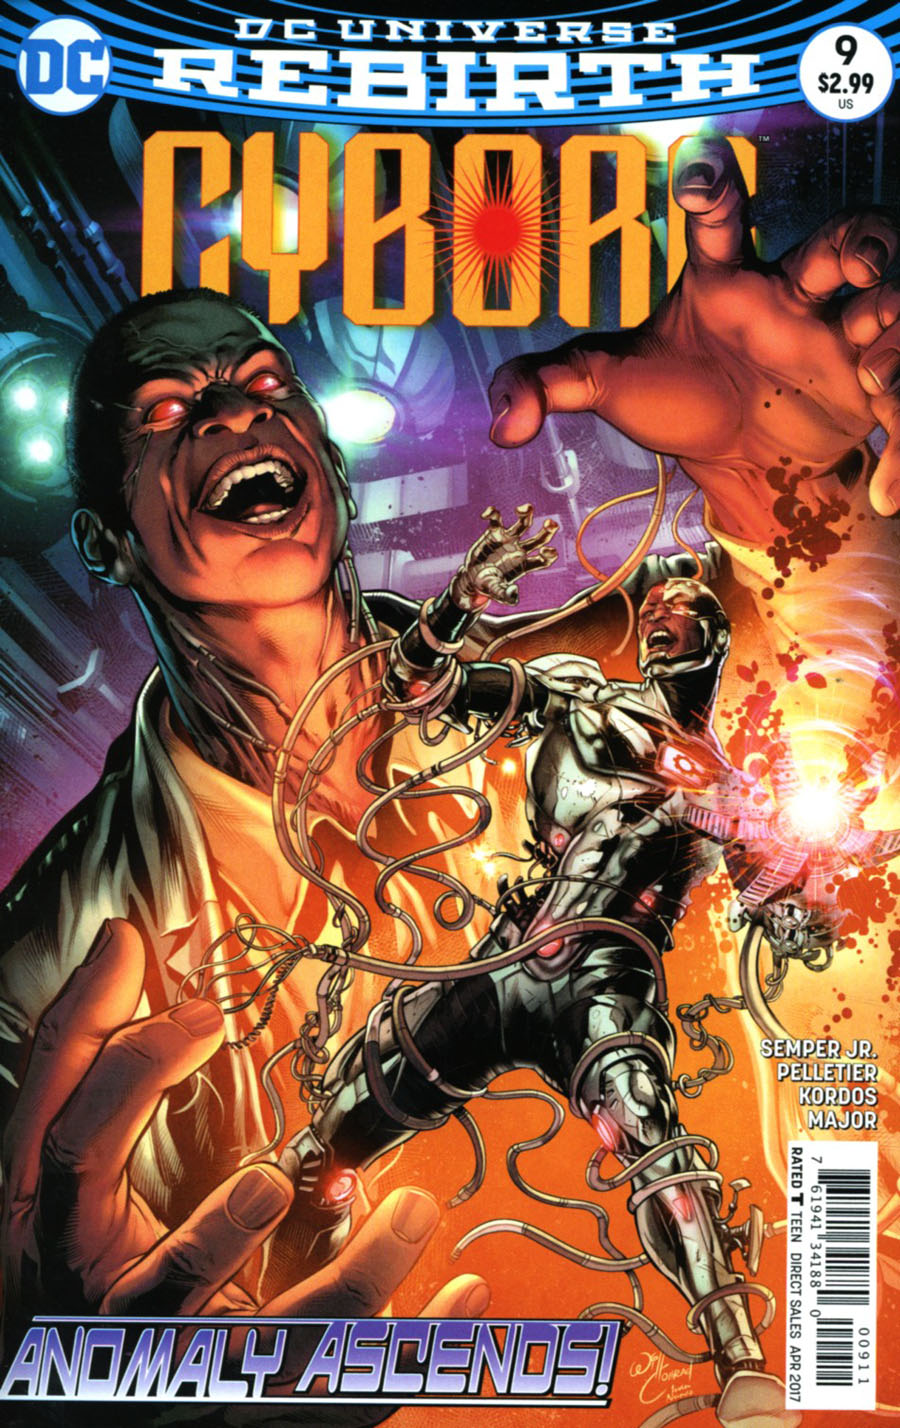 Cyborg Vol 2 #9 Cover A Regular Will Conrad Cover